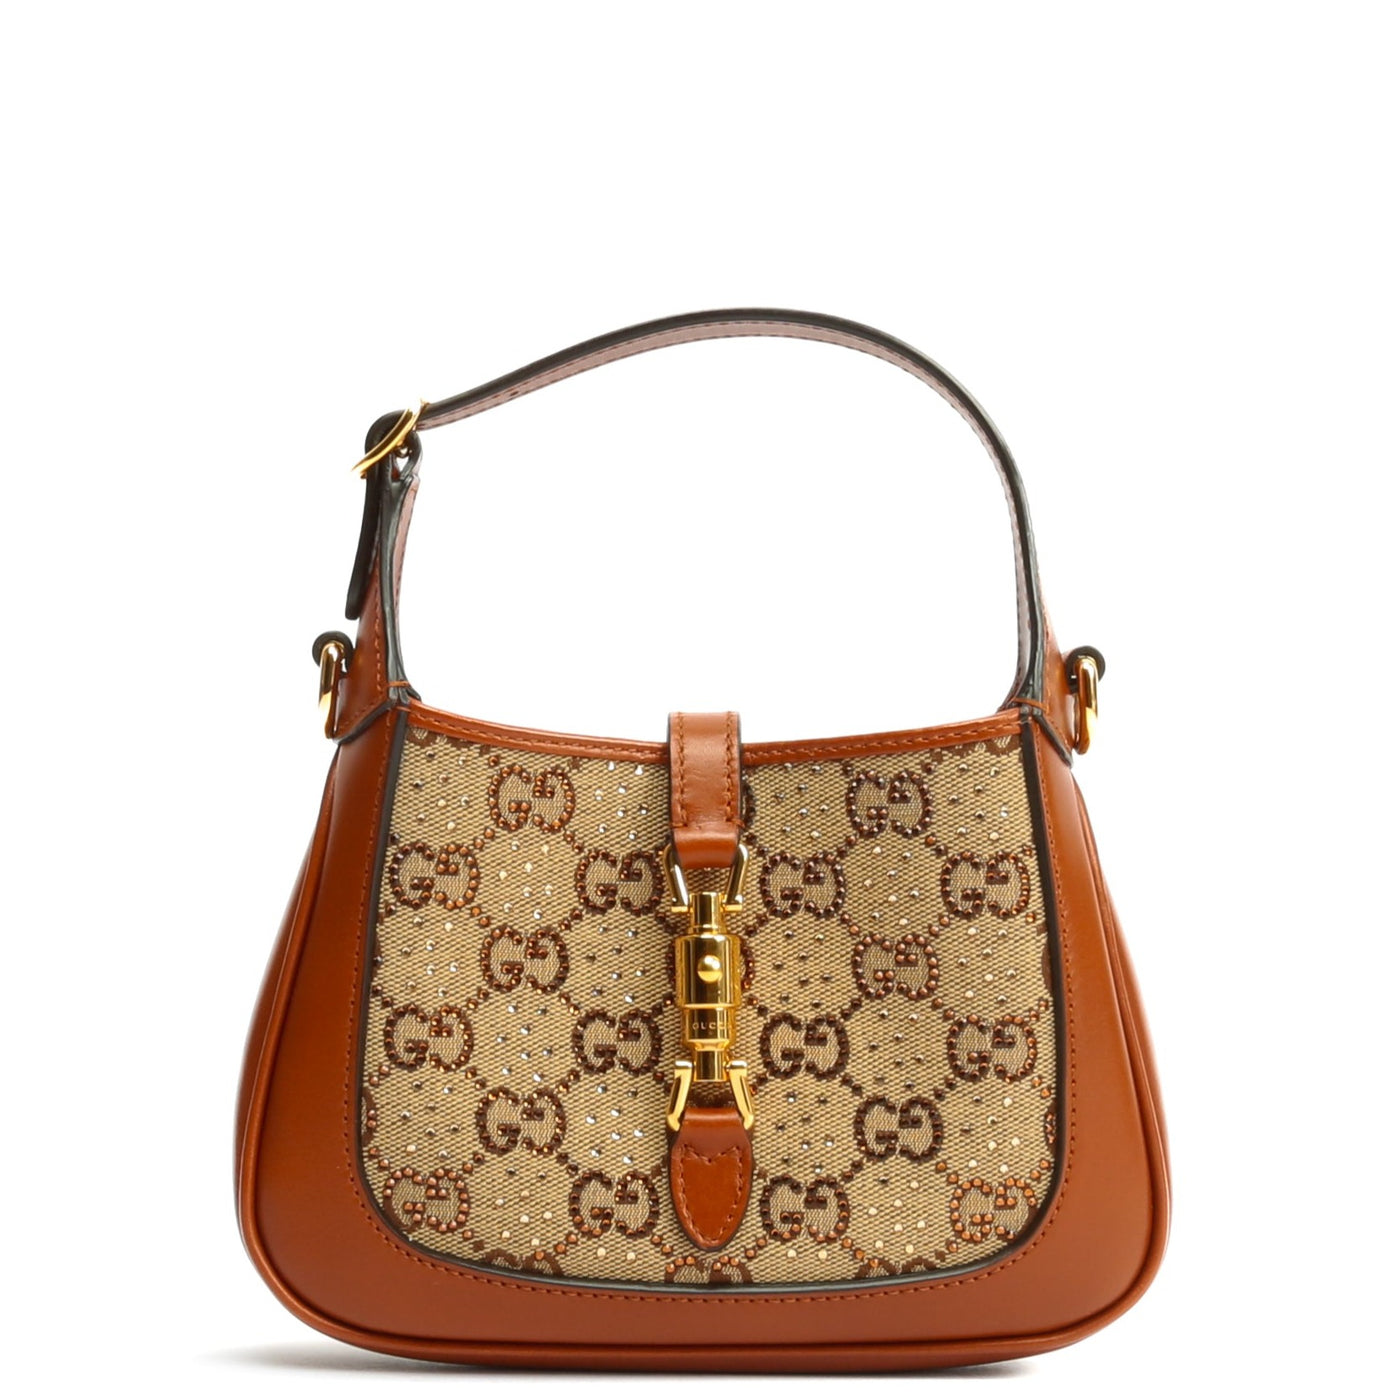 Jackie 1961 Bag in Brown - Gucci